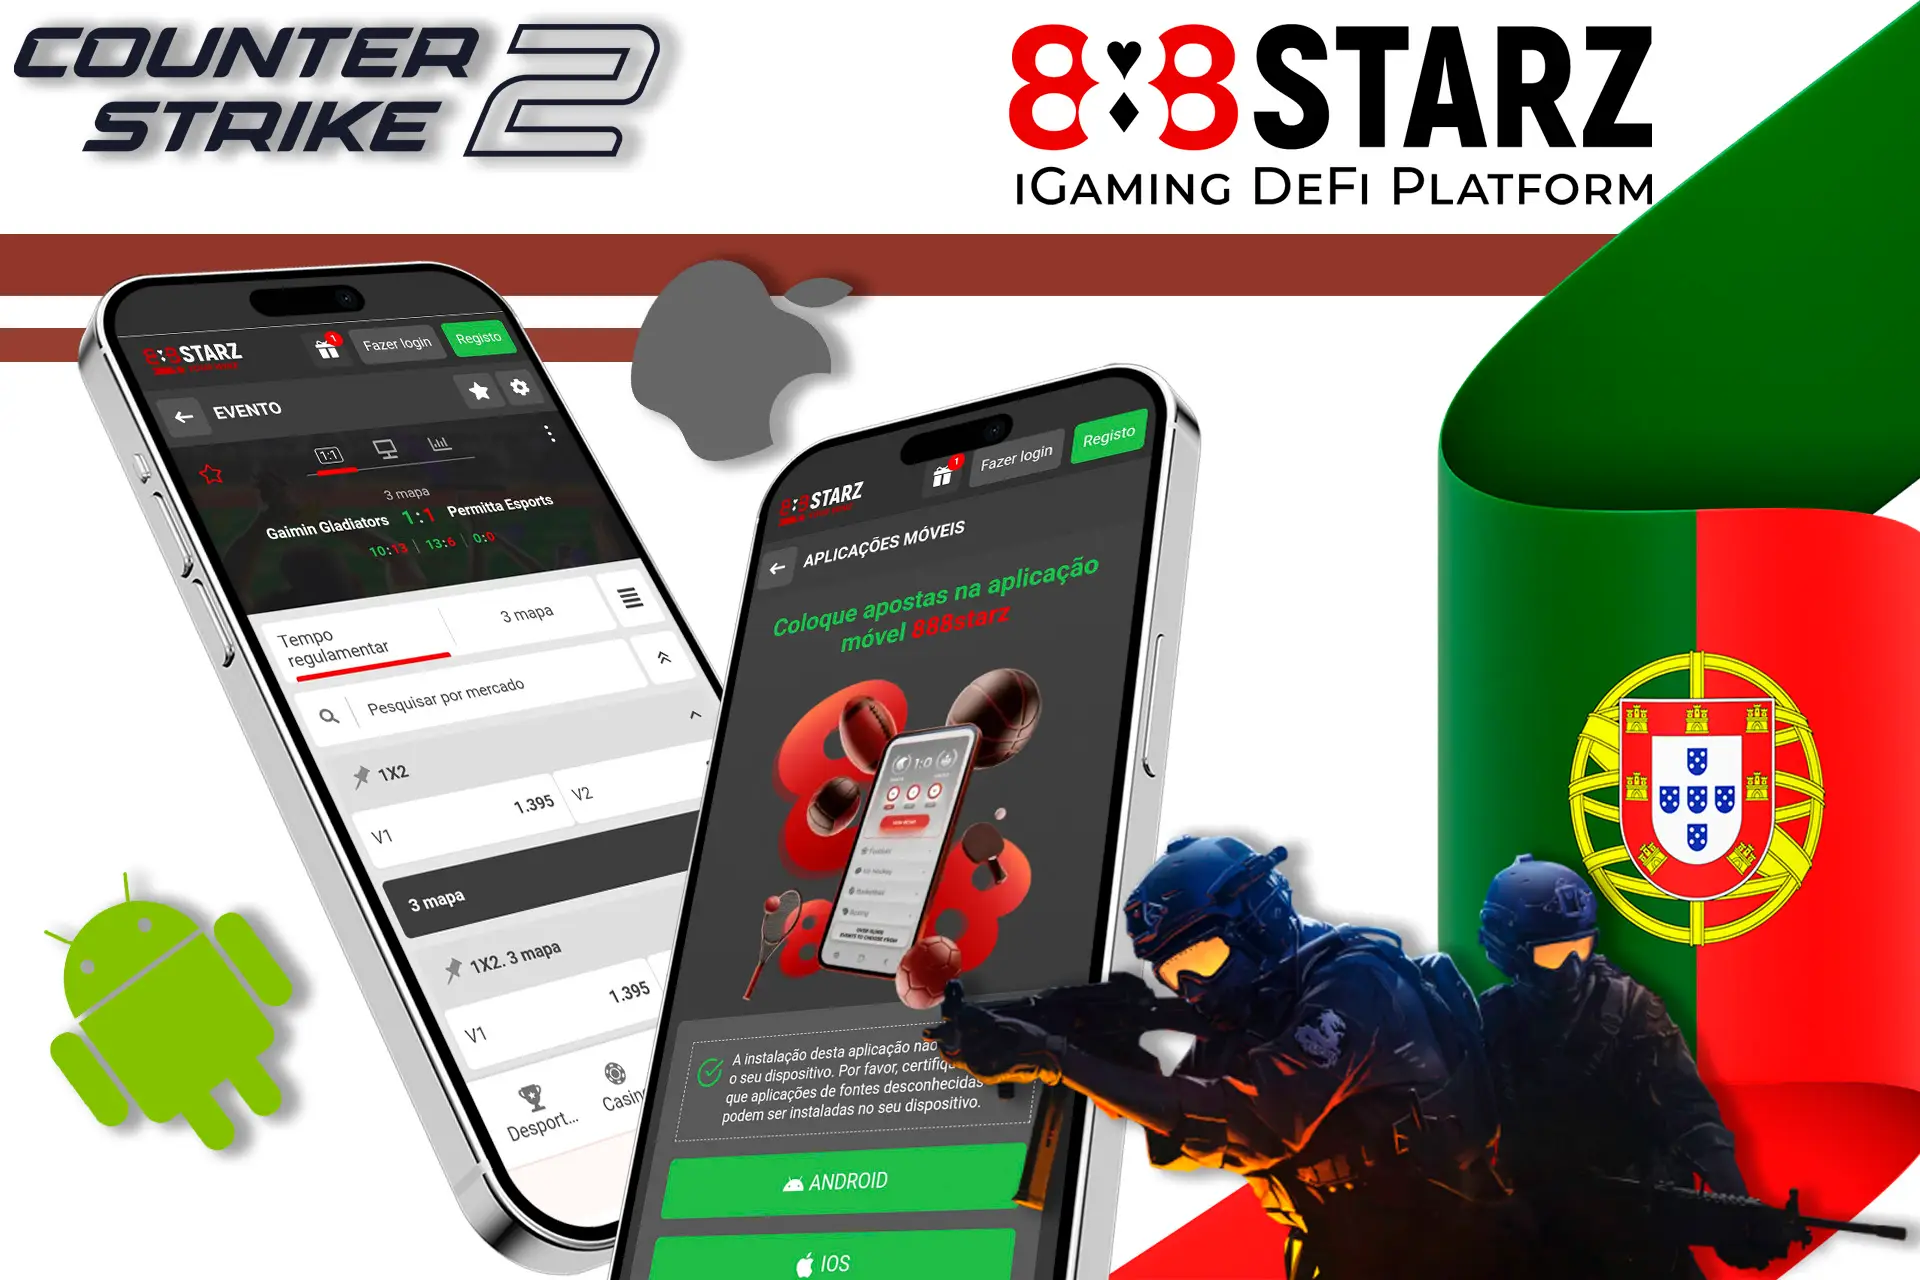 Jogue Counter-Strike 2 com o aplicativo móvel 888Starz